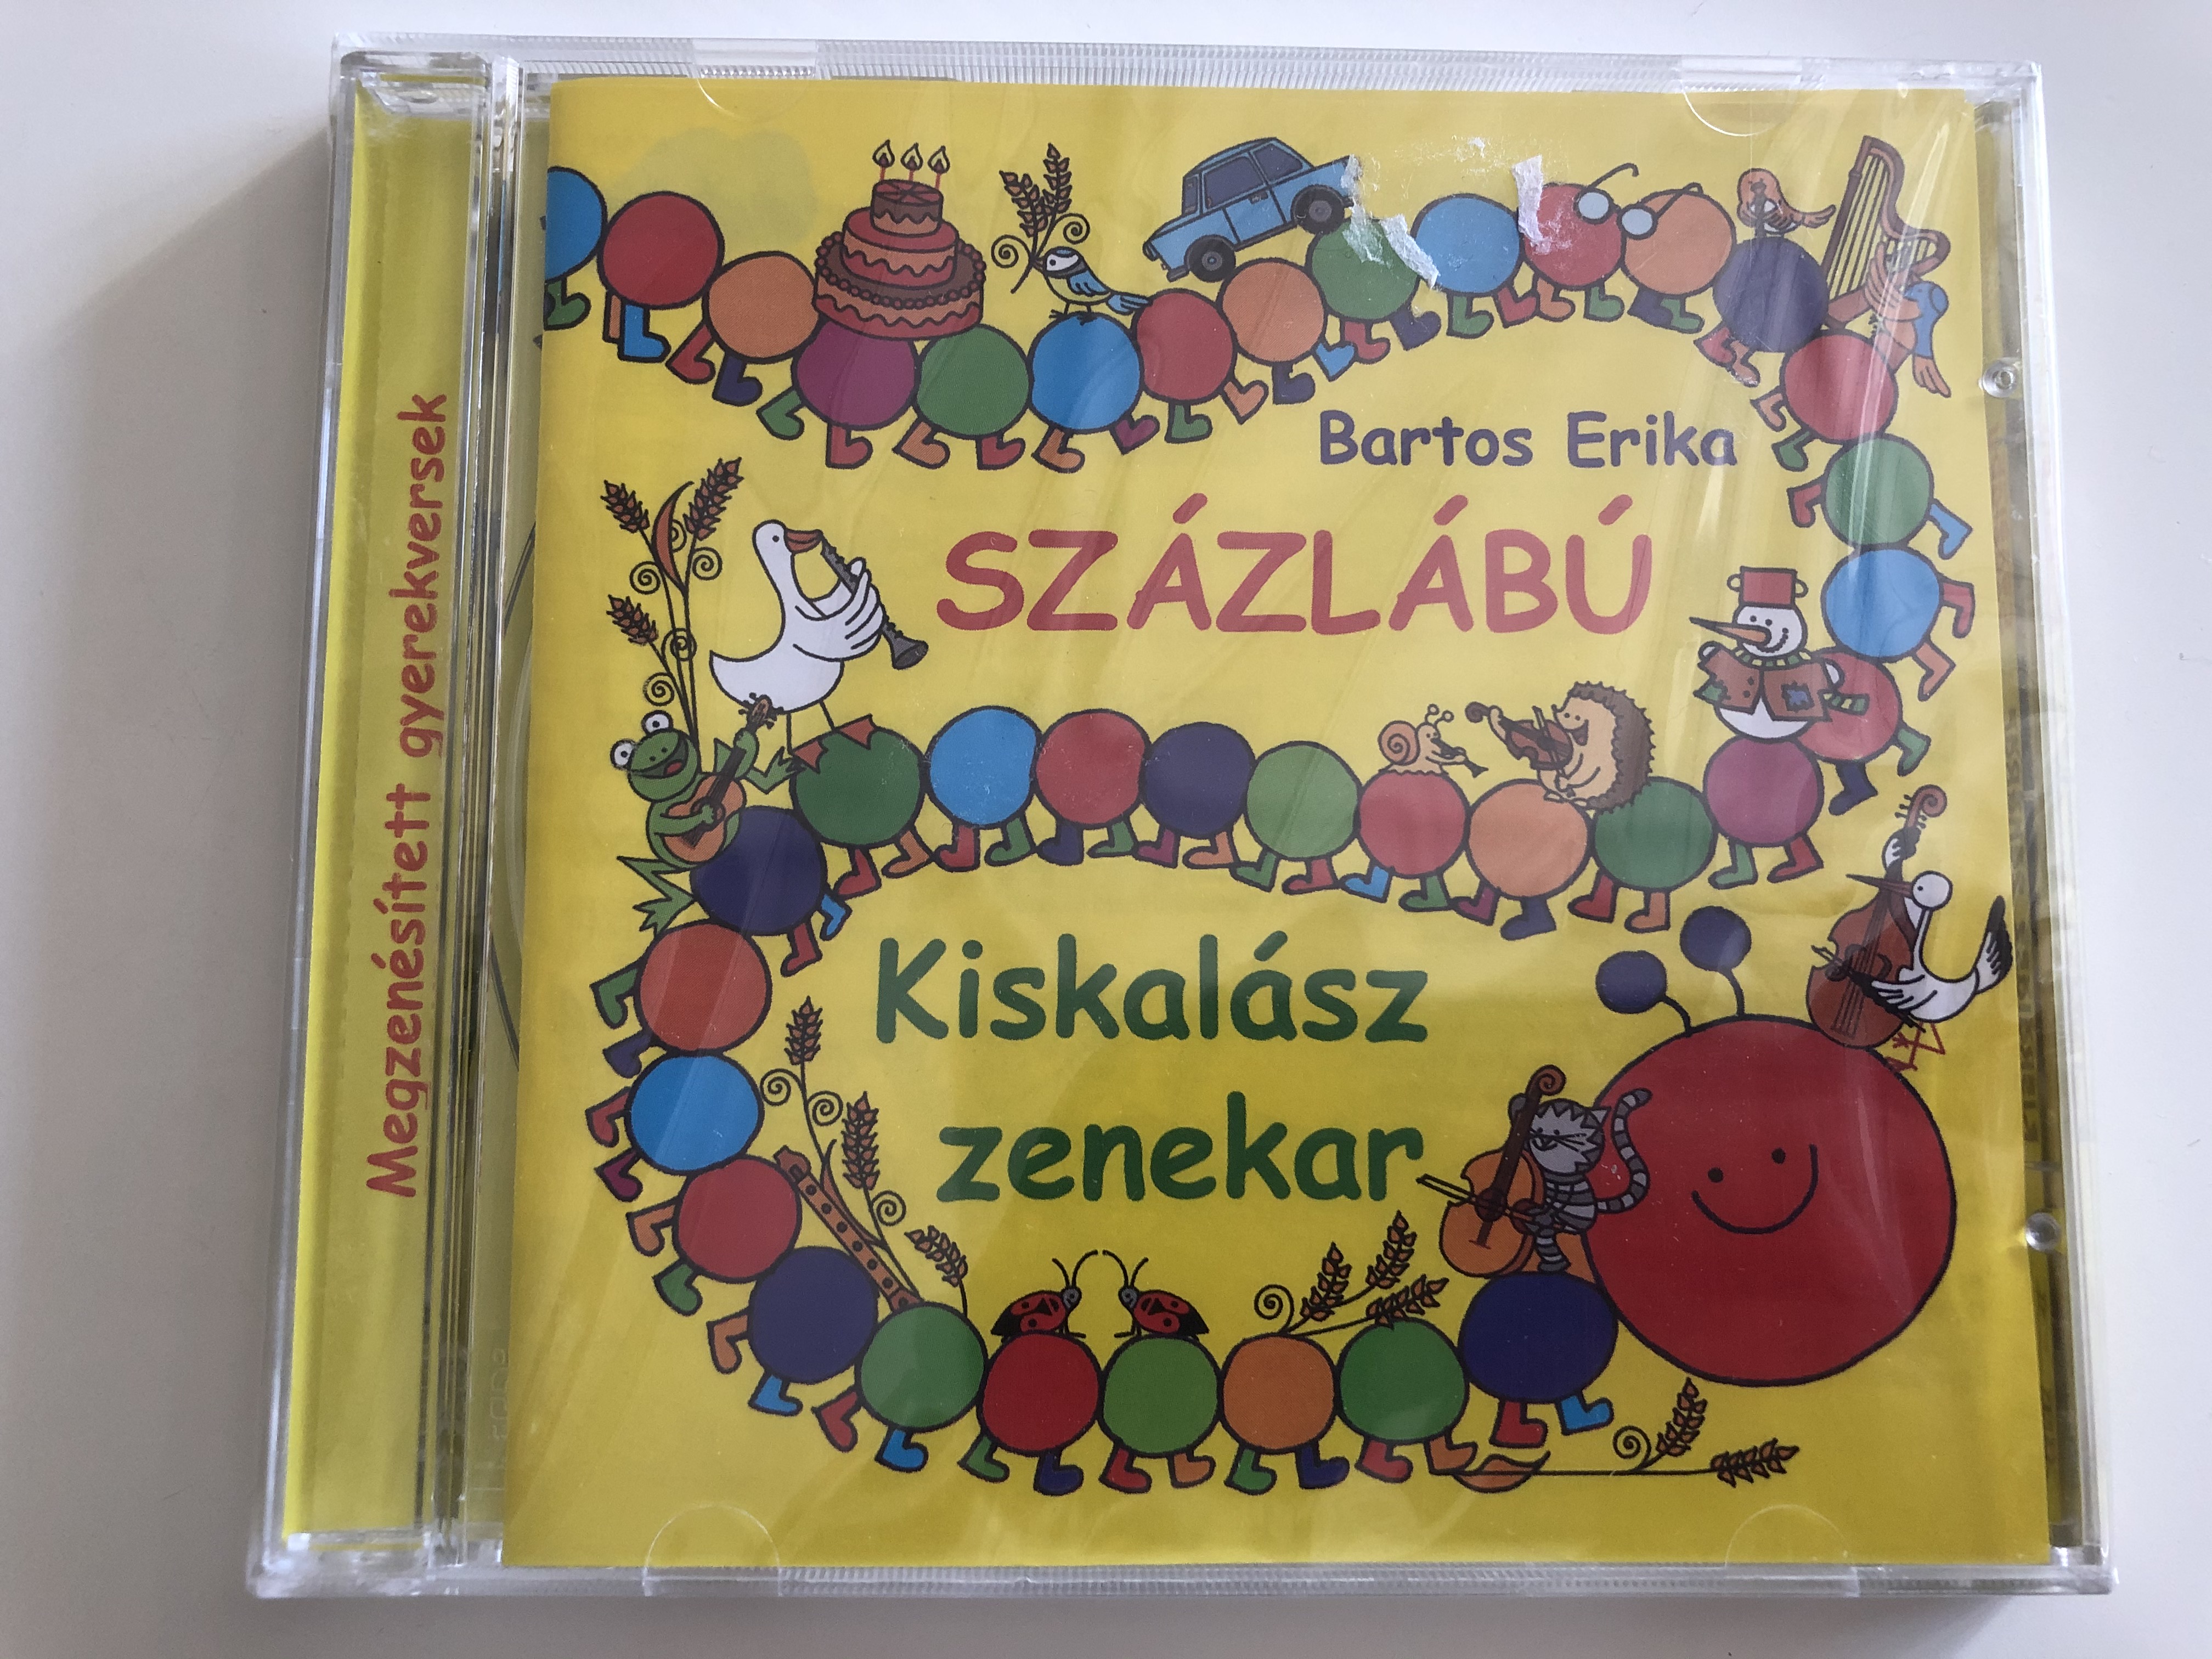 bartos-erika-sz-zl-b-kiskal-sz-zenekar-alexandra-records-audio-cd-2010-5999556203704-1-.jpg